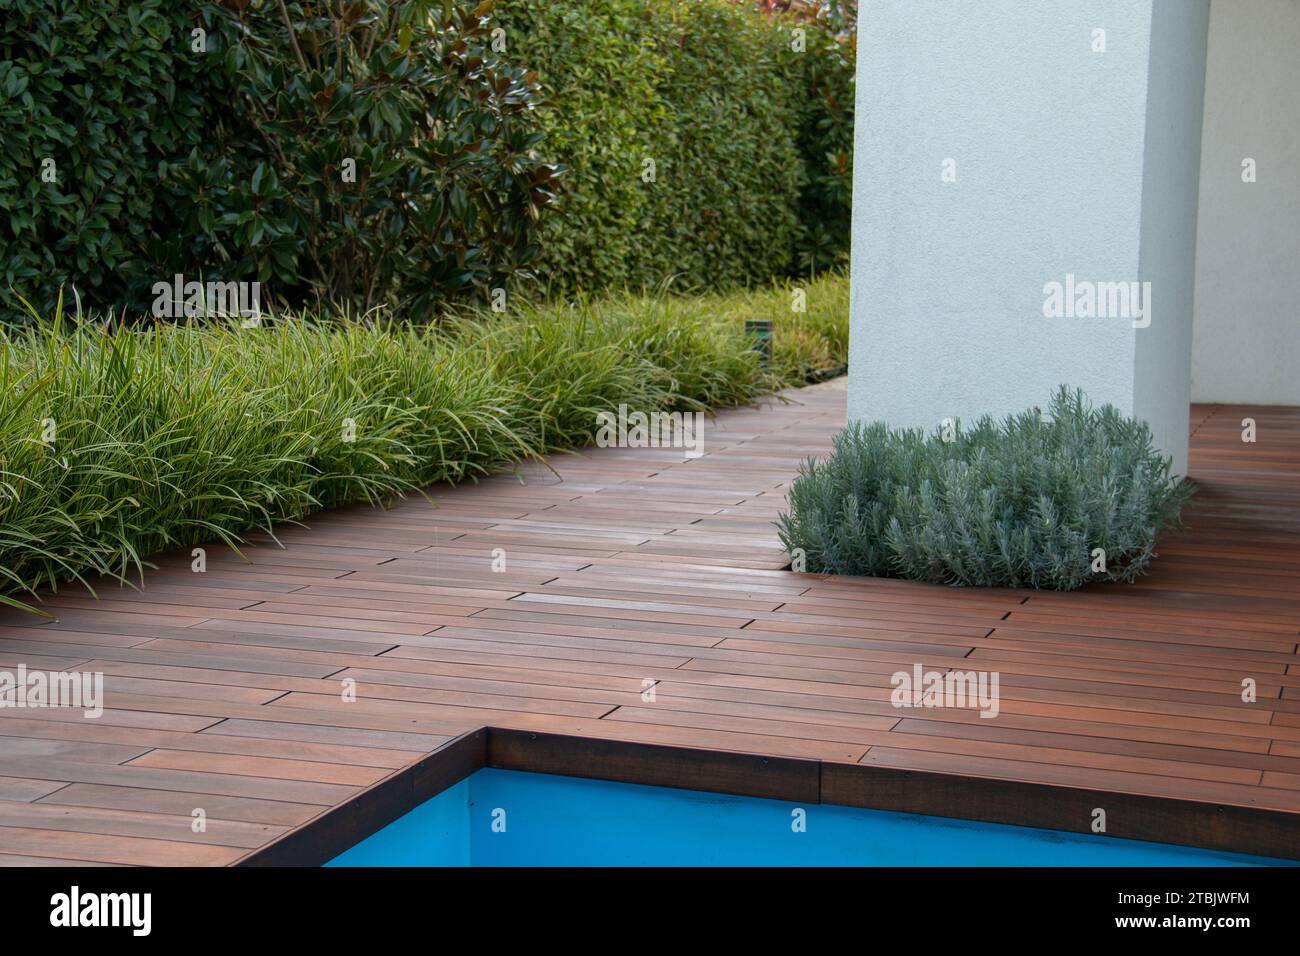 Terrazza piscina con pavimento in legno con scrub di recinzione sempreverde, erba e pilastro bianco, idea di privacy a bordo piscina Foto Stock